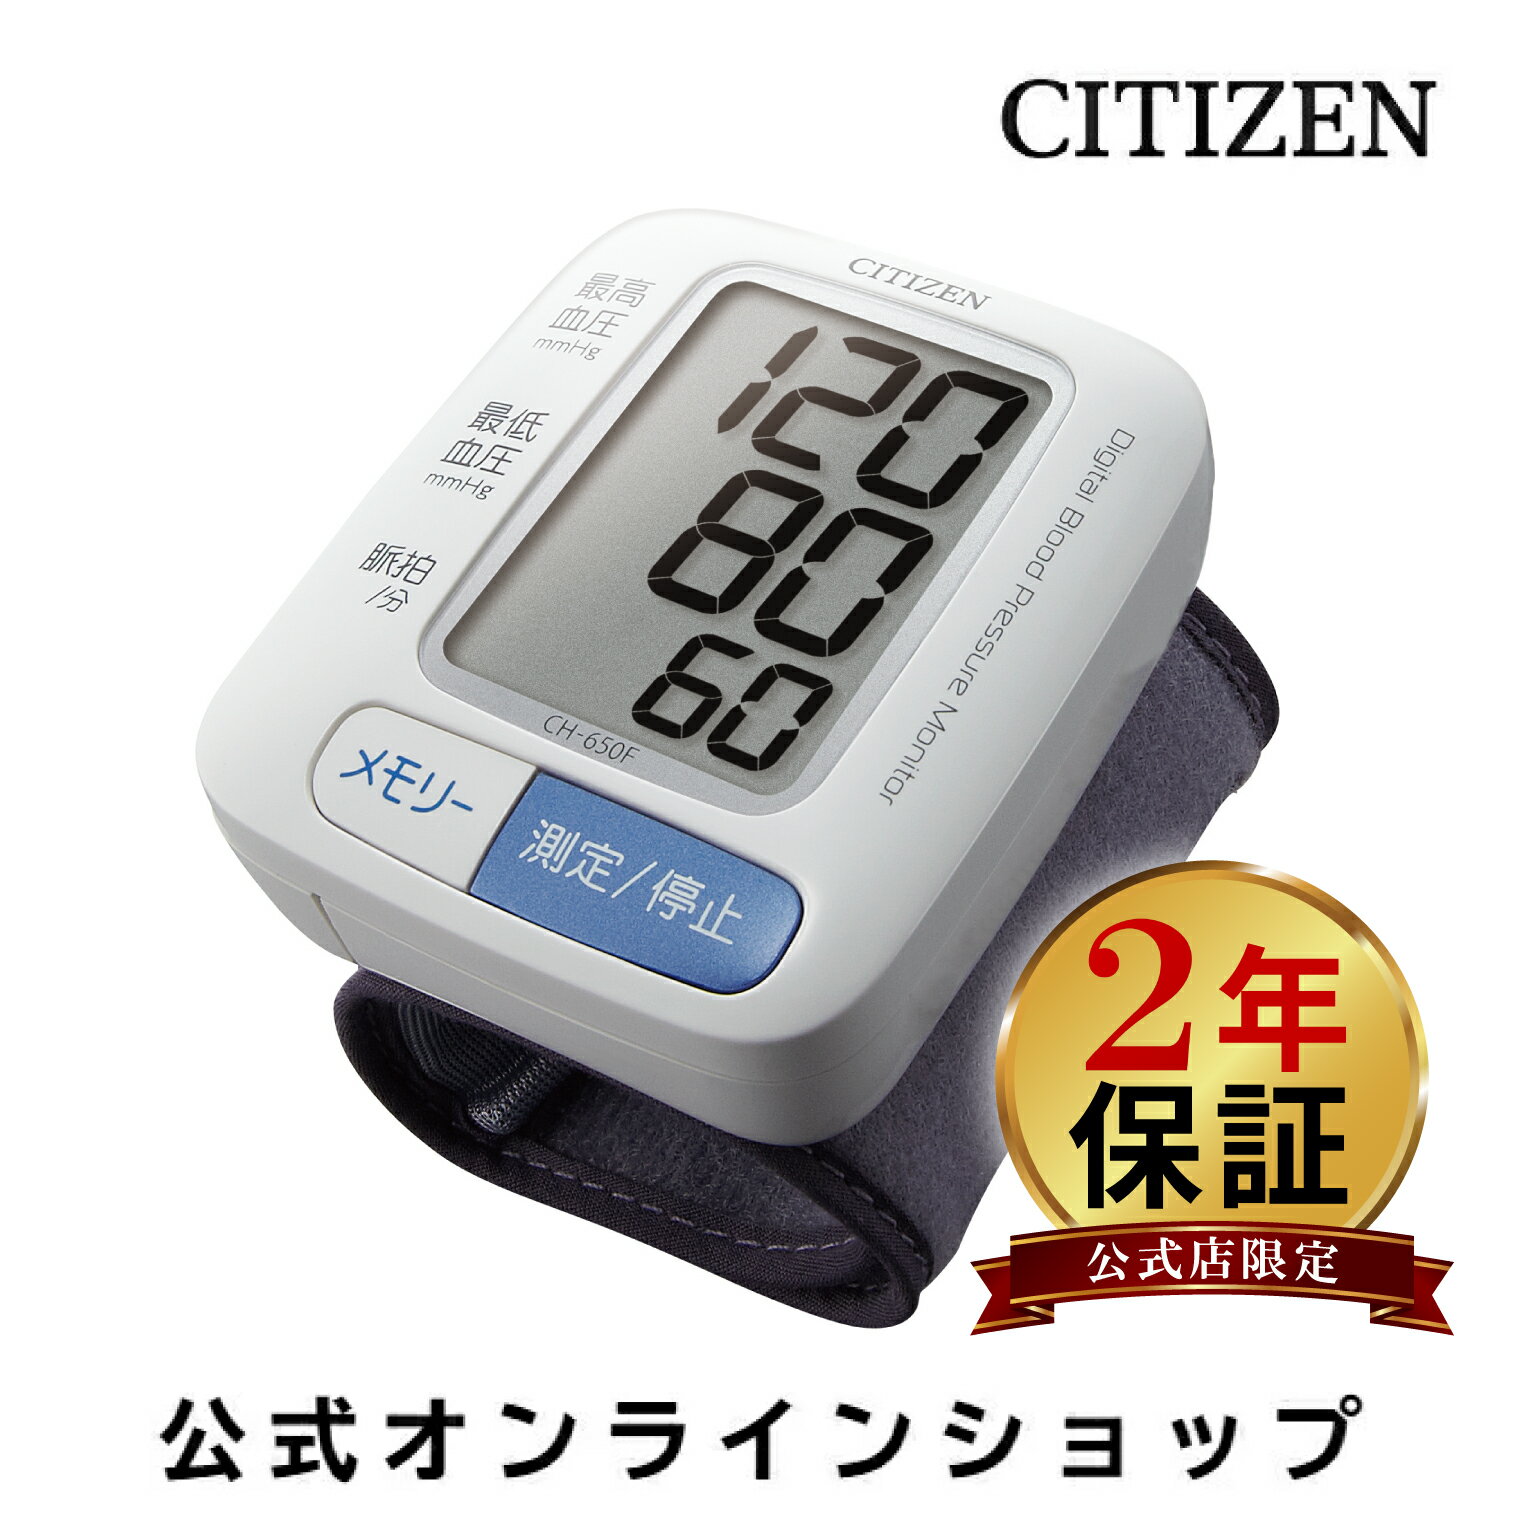 【2年保証】 シチズン 血圧計 ch 650f CITIZEN CH650F 手首式 携帯用 60回 メモリー 手首式血圧計 ハード カフ 血圧 計 小さい 簡単 正確 手首 携帯 家庭用 持ち運び コンパクト 血圧測定器 家…